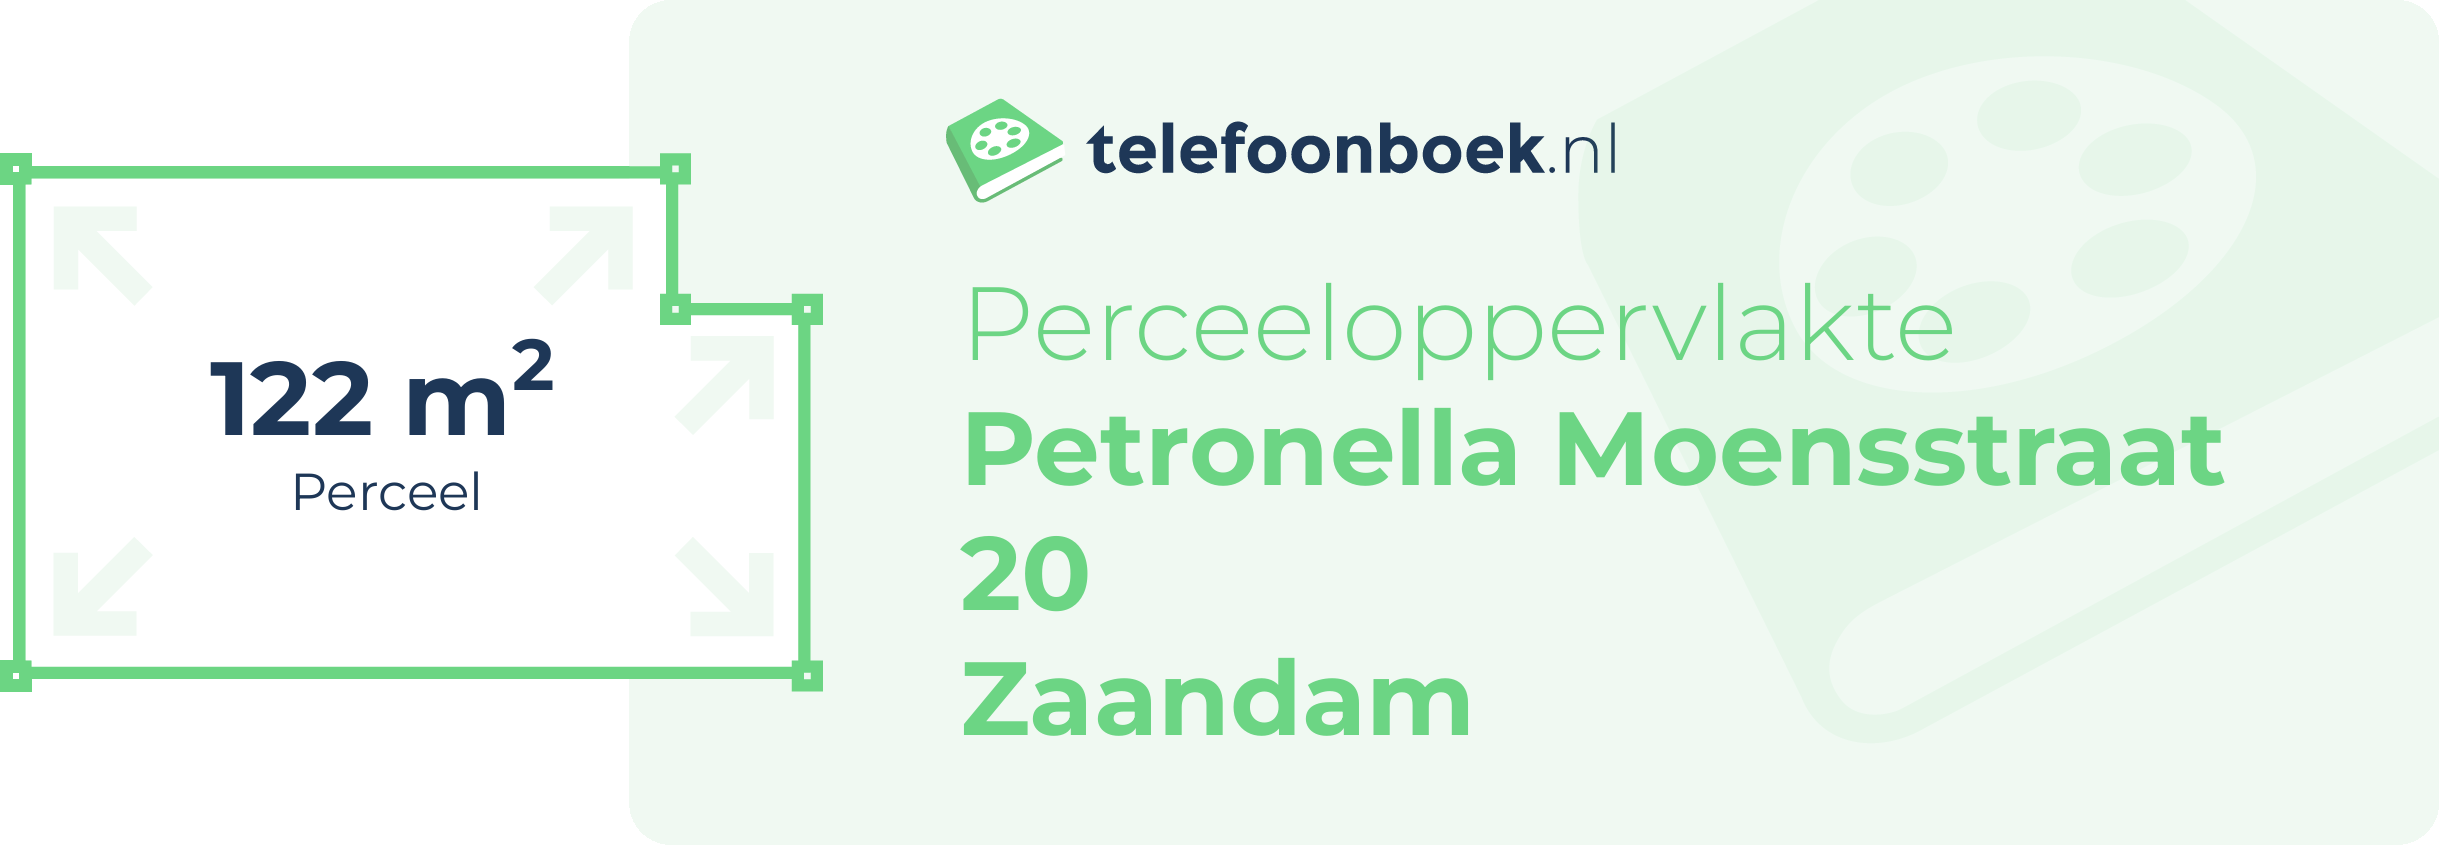 Perceeloppervlakte Petronella Moensstraat 20 Zaandam